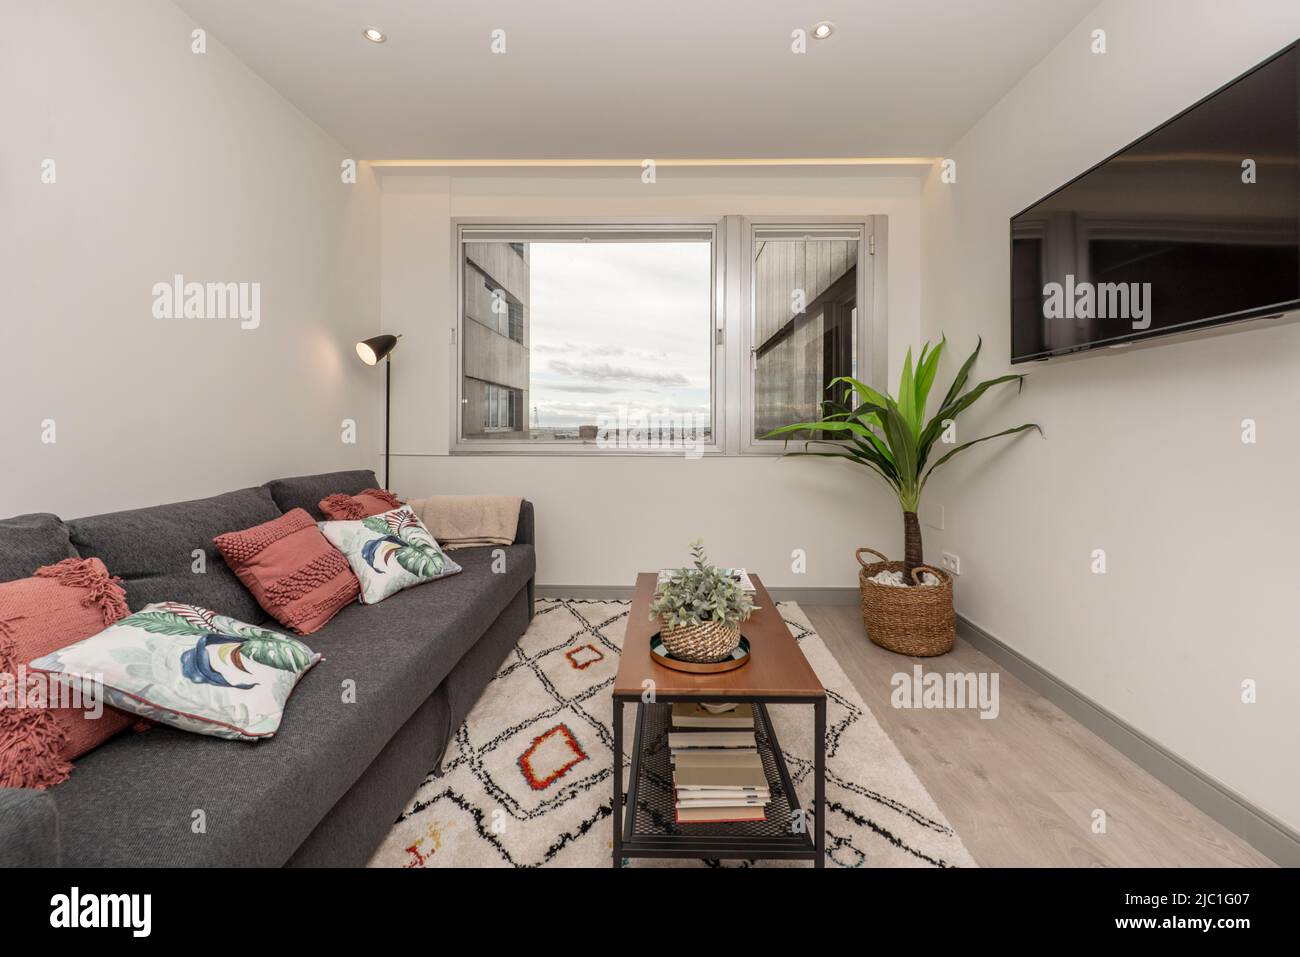 Wohnzimmer mit grauem Dreisitzer-Schlafsofa, weiß gemustertem Teppich, Beistelltisch im Industriestil mit fernseher an der Wand und Aluminiumfenster mit Aussicht Stockfoto